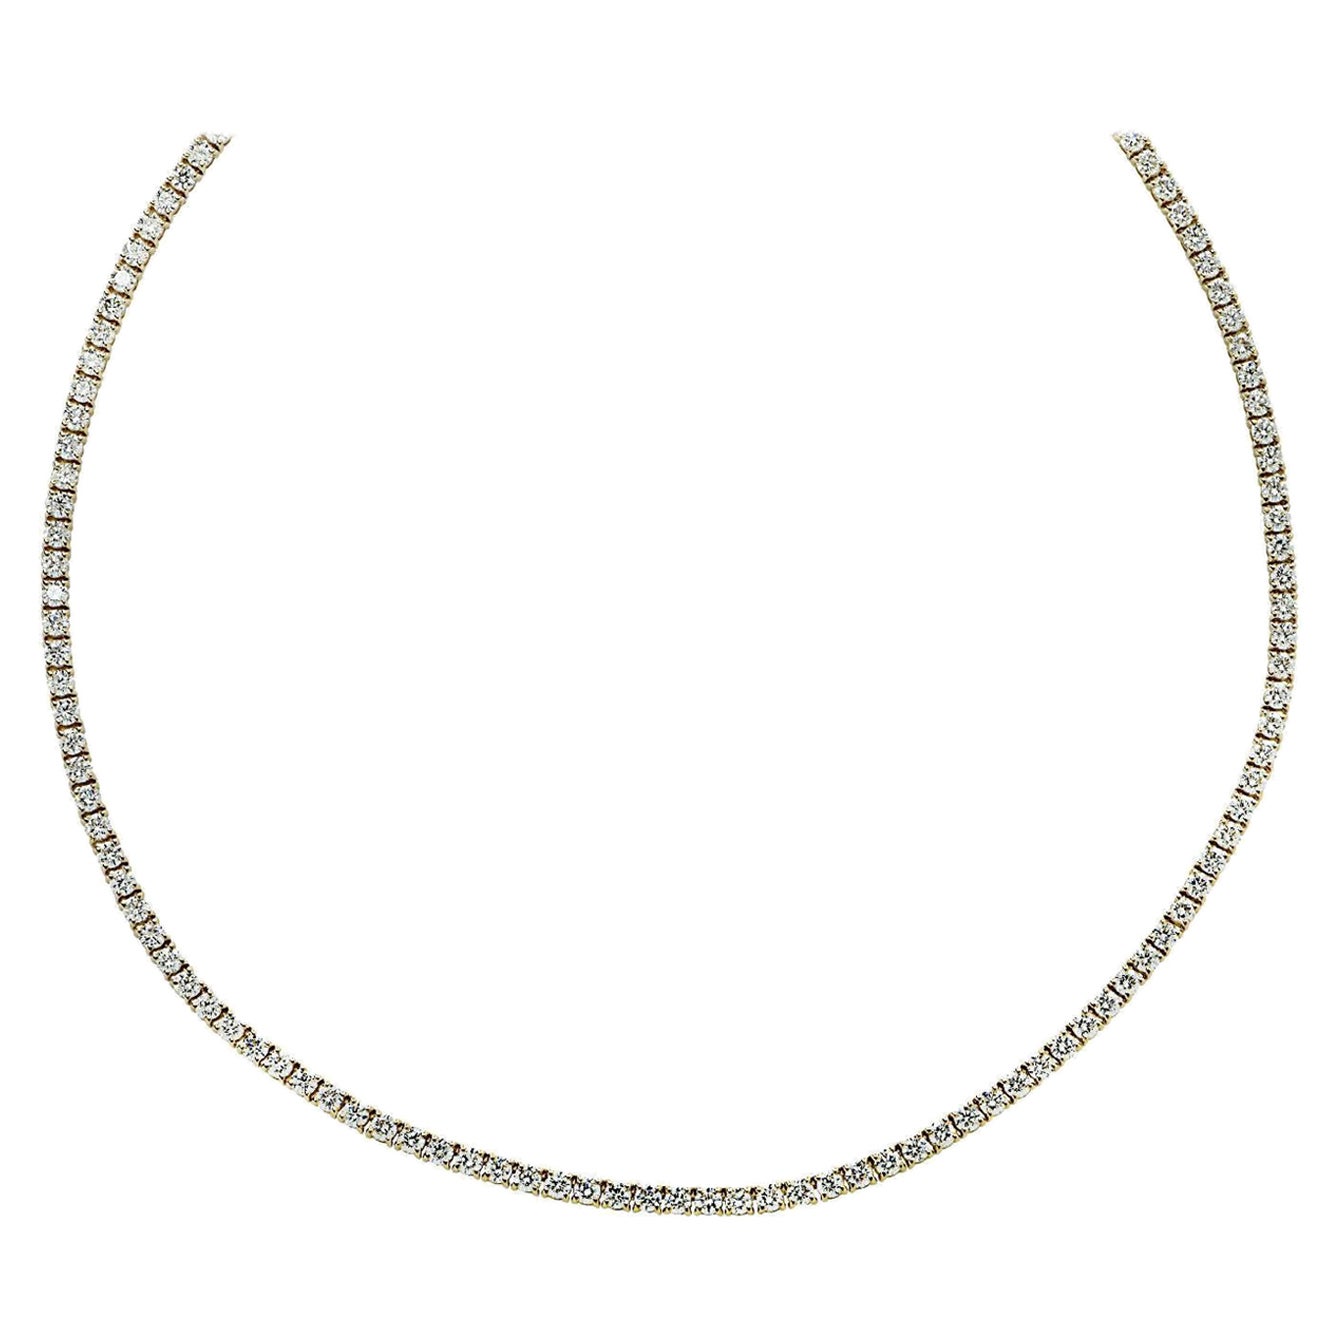 Vivid Diamonds 10.07 Carat Straight Line Diamond Tennis Necklace